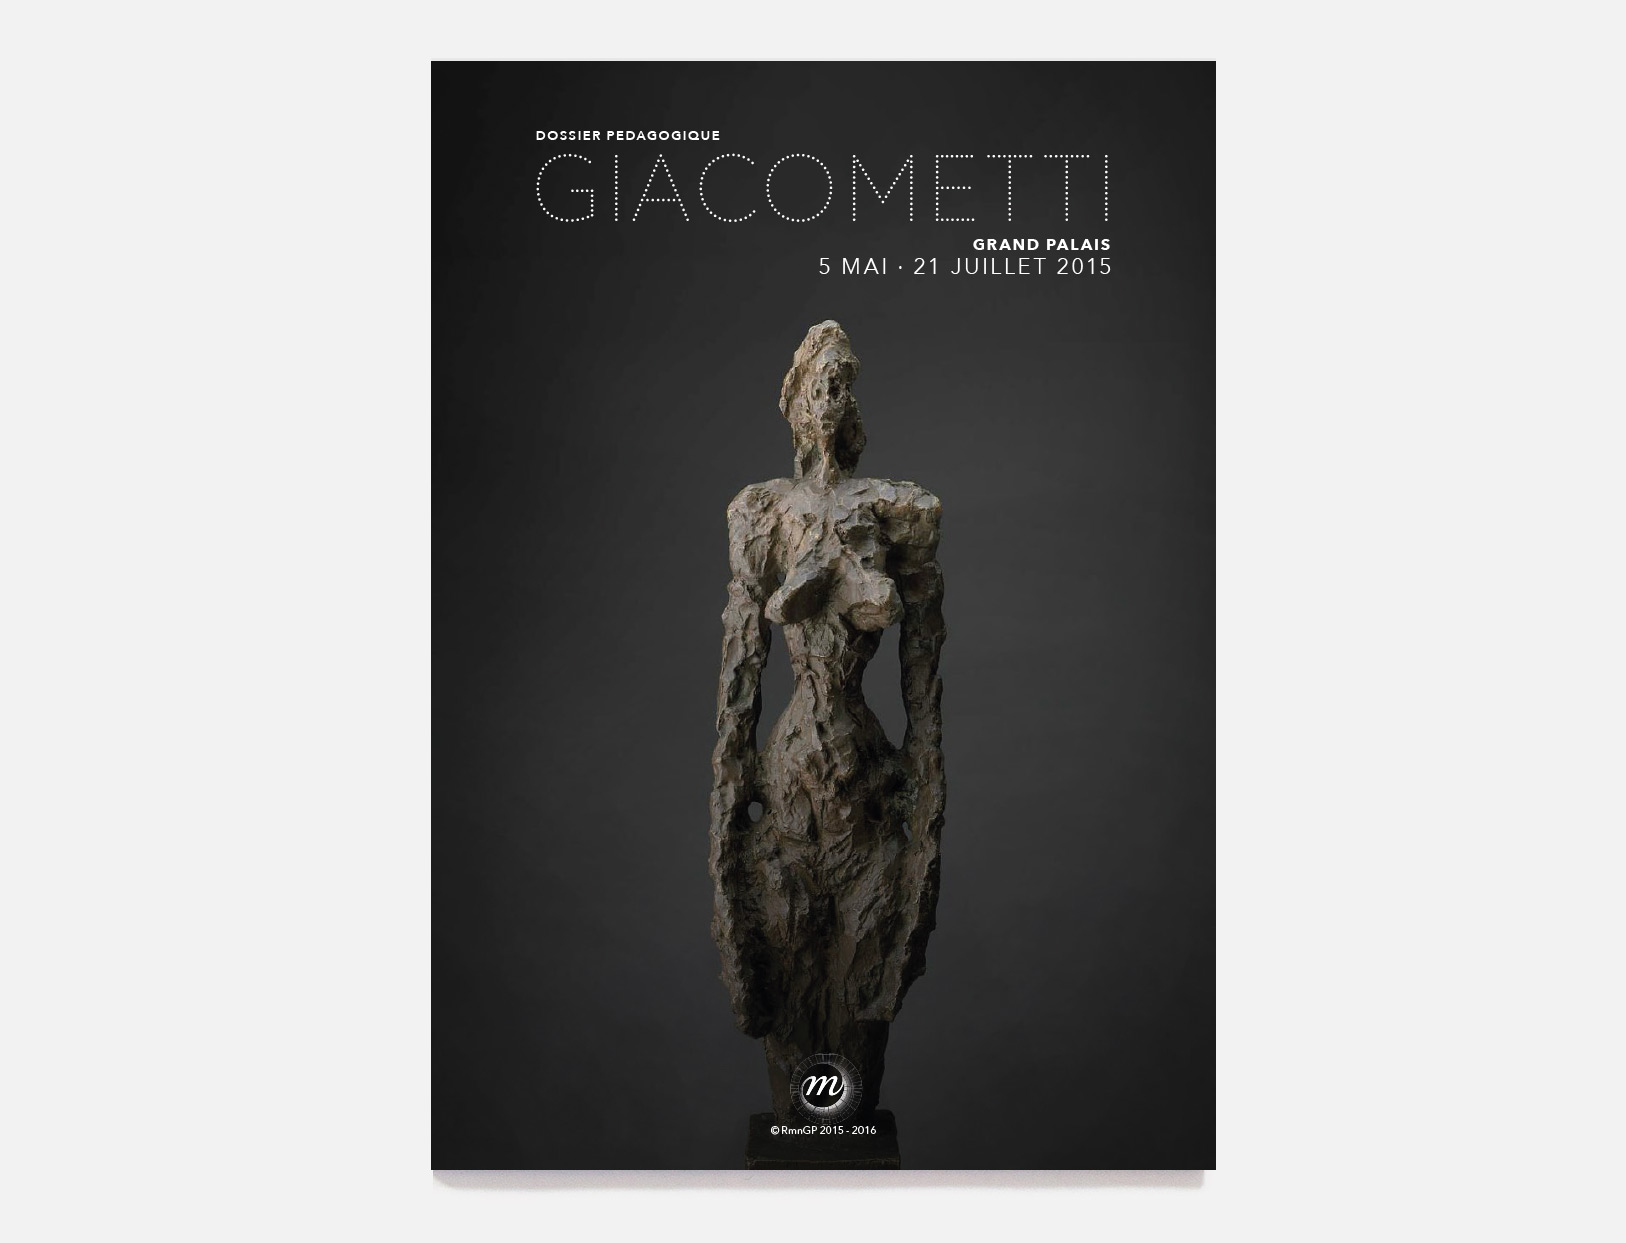 Dossier pedagogique du grand palais Giacometti